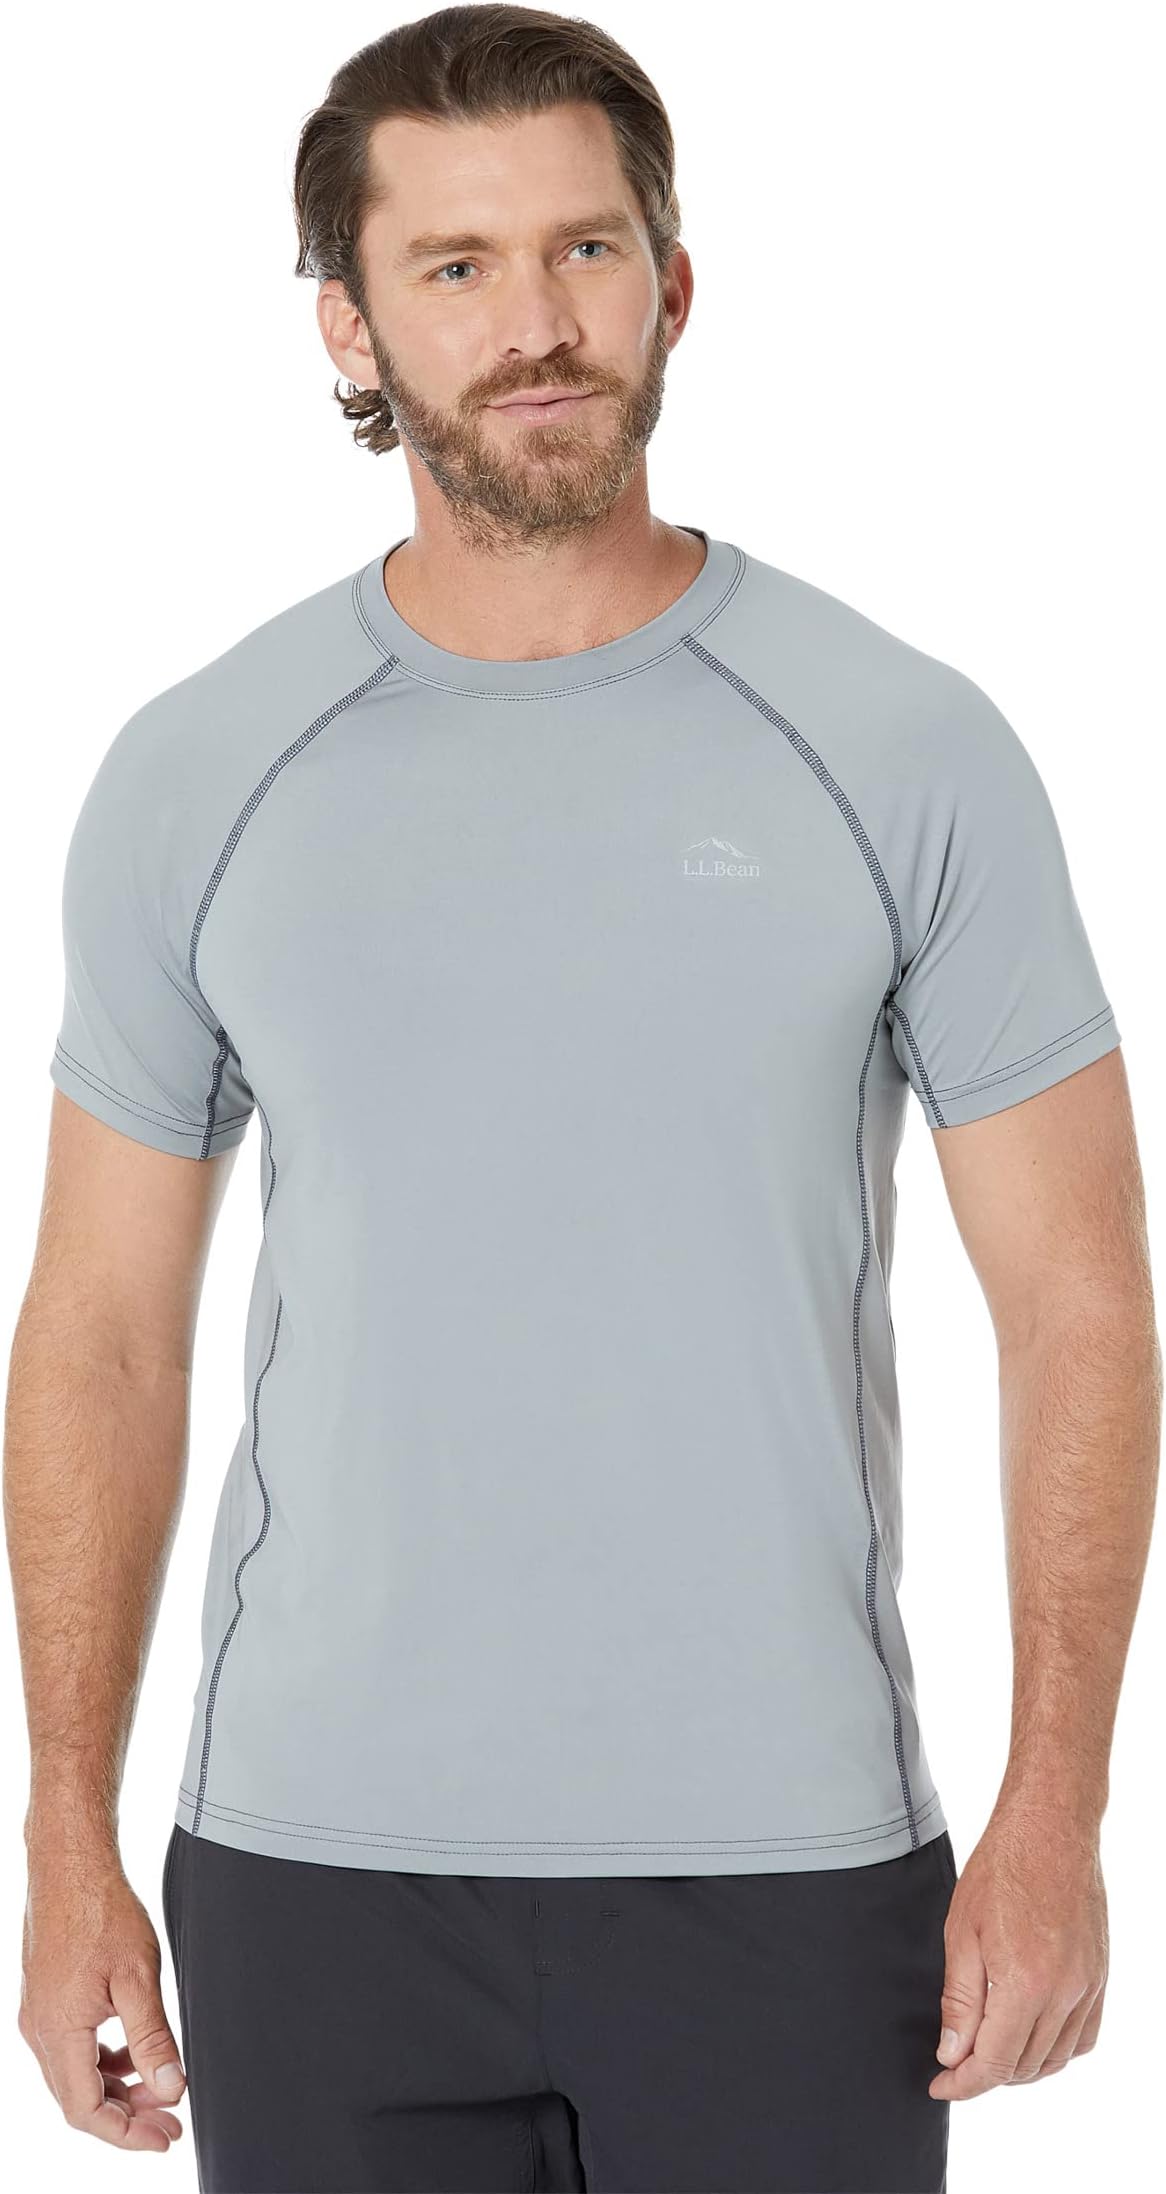 Охлаждающая солнцезащитная рубашка Swift River с короткими рукавами, стандартная L.L.Bean, цвет Graystone